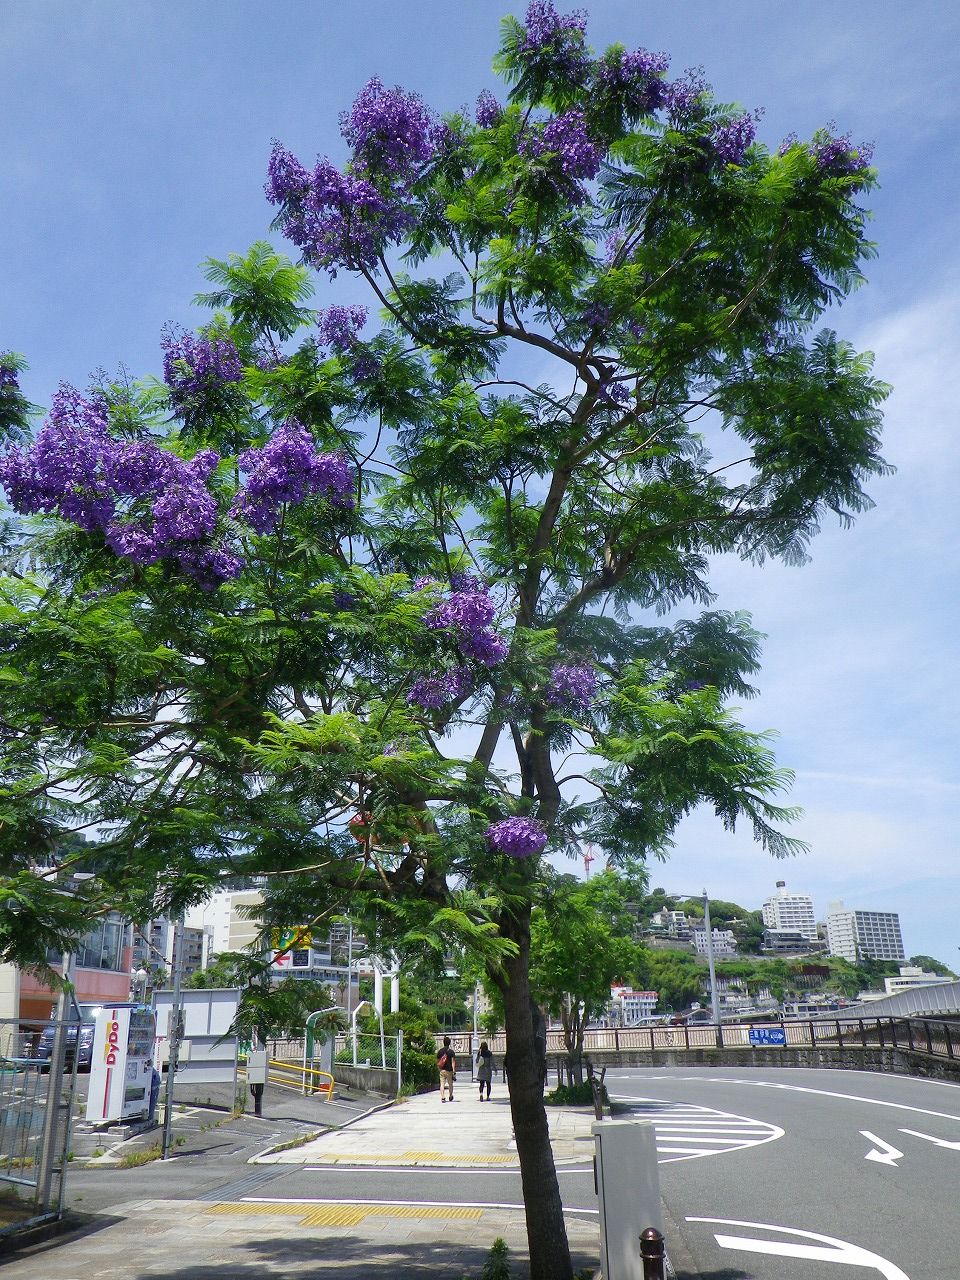 暑さの中に涼しげな青紫のジャカランダの花 熱海市 ジャカランダ遊歩道 熱海の新たな成長へ向けて 元 副市長 田邉のブログ